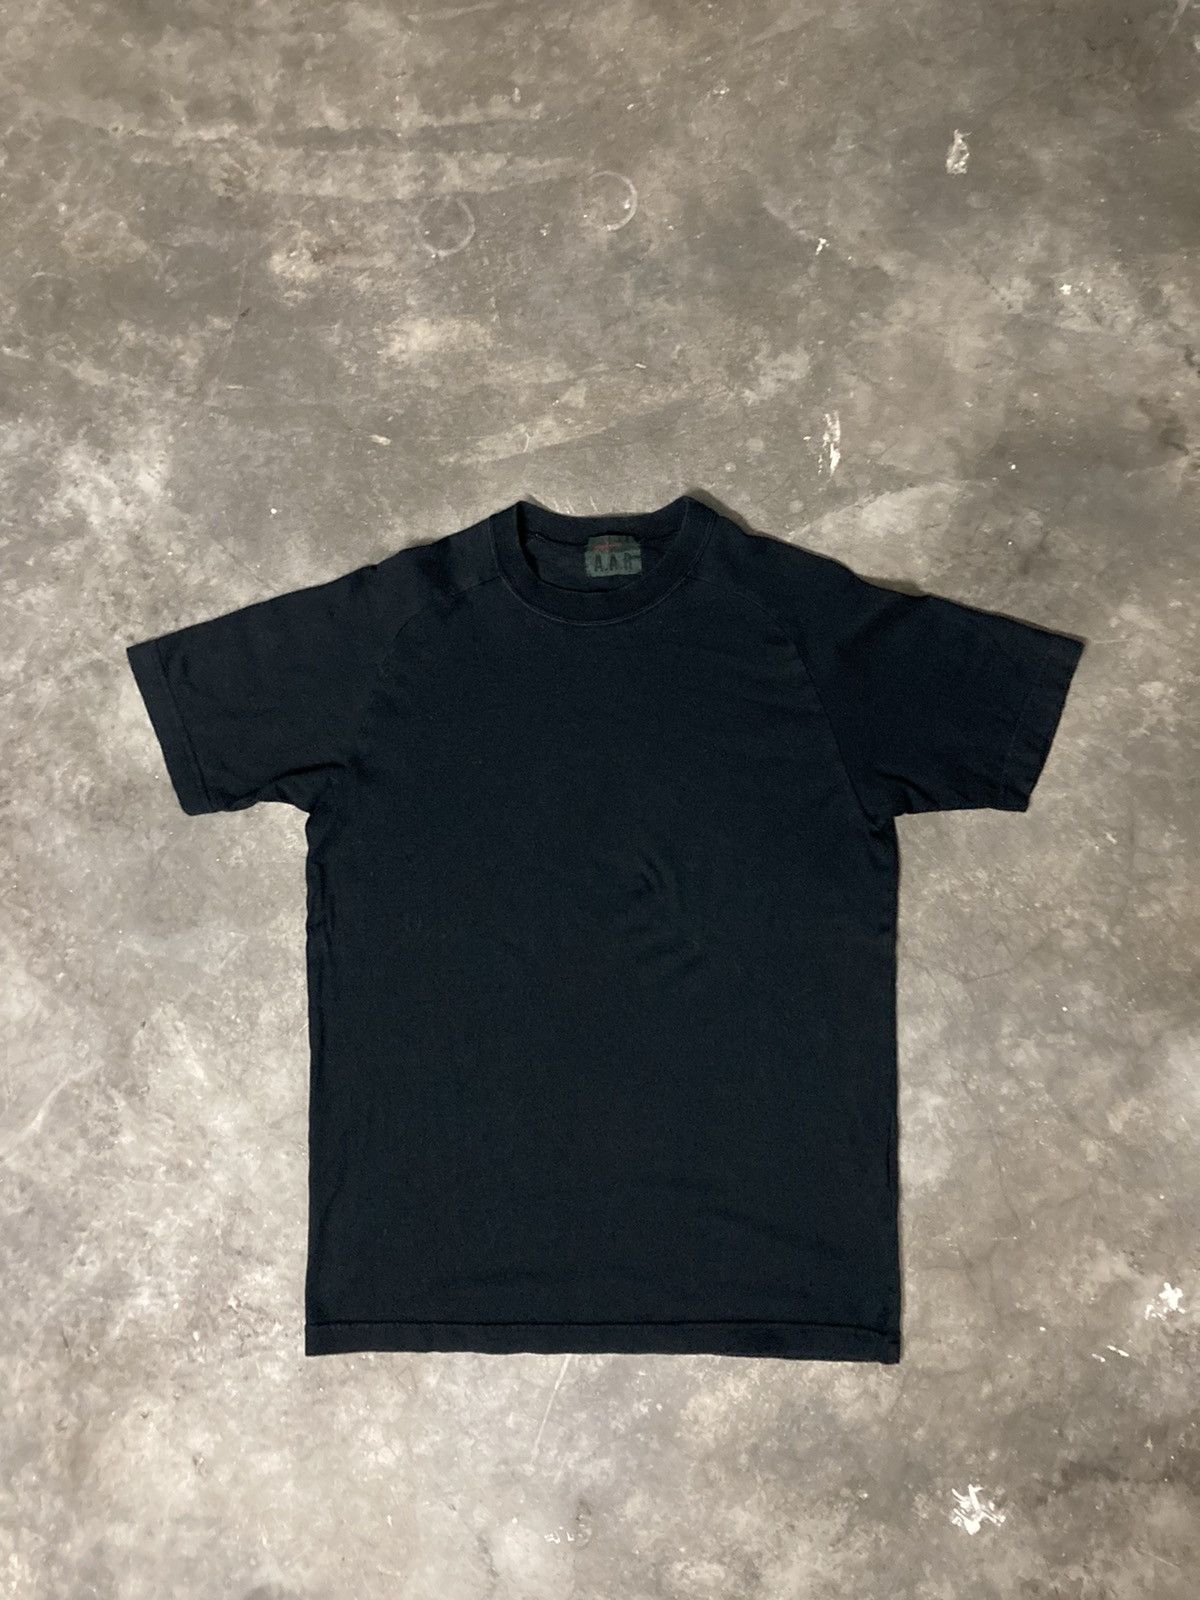 A.A.R Yohji Yamamoto x Durban Black Plain Shirt - 8